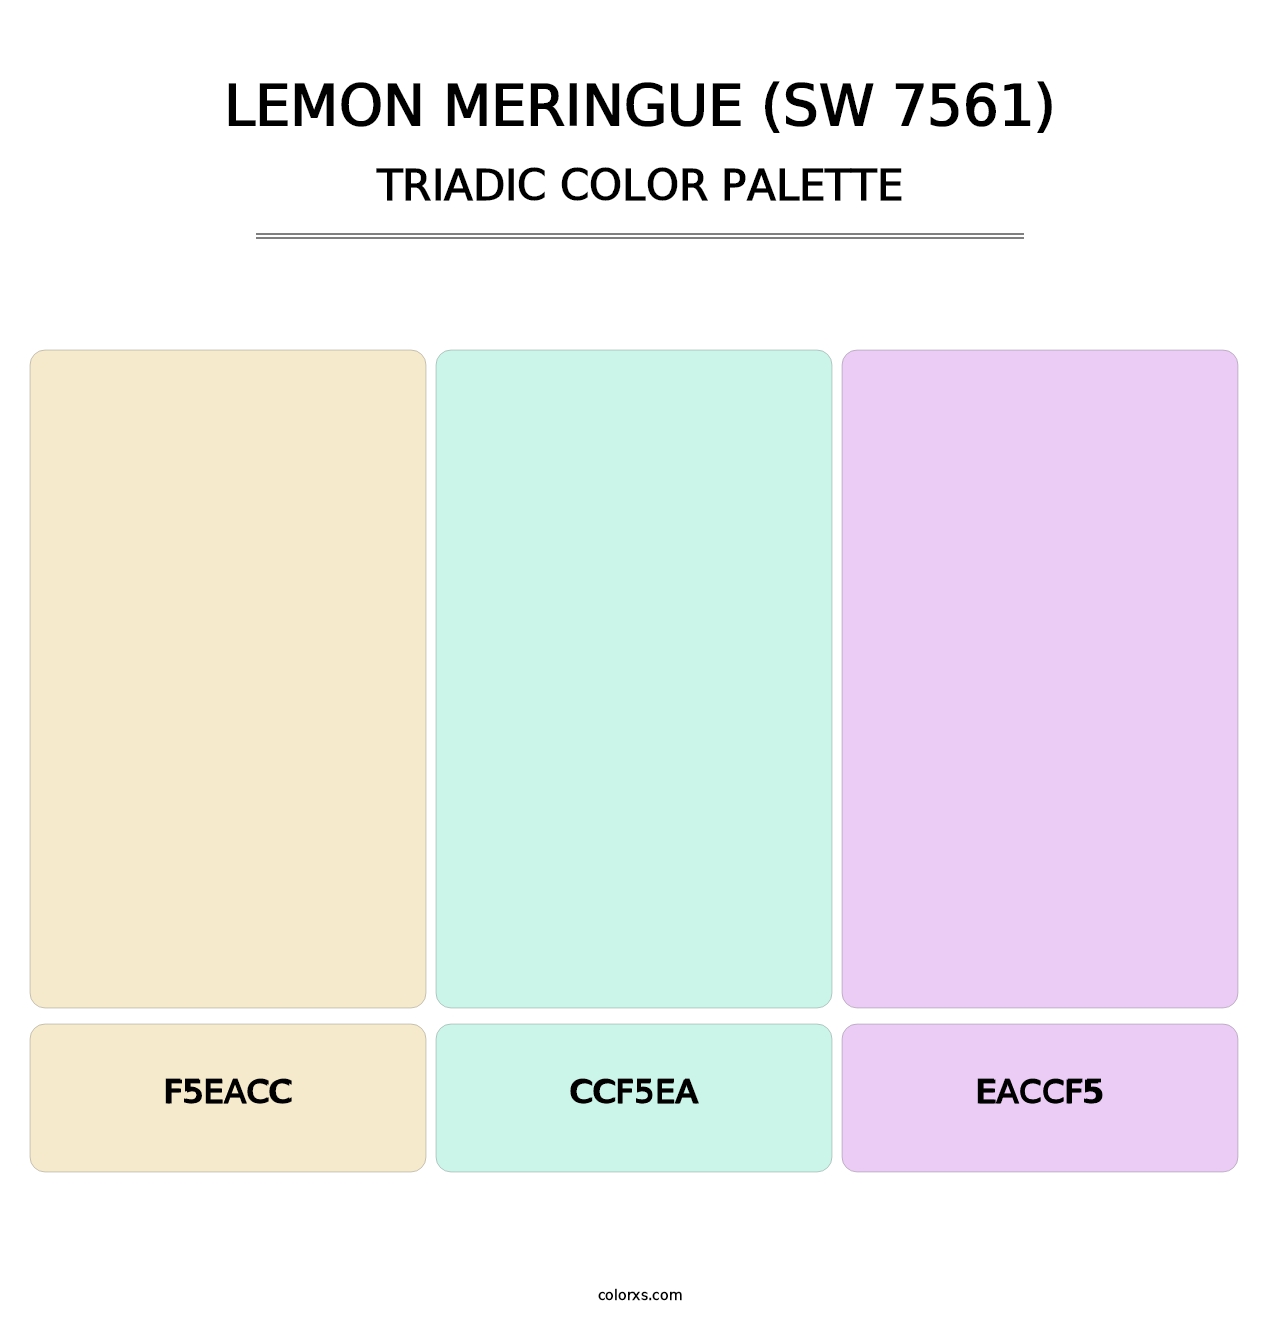 Lemon Meringue (SW 7561) - Triadic Color Palette